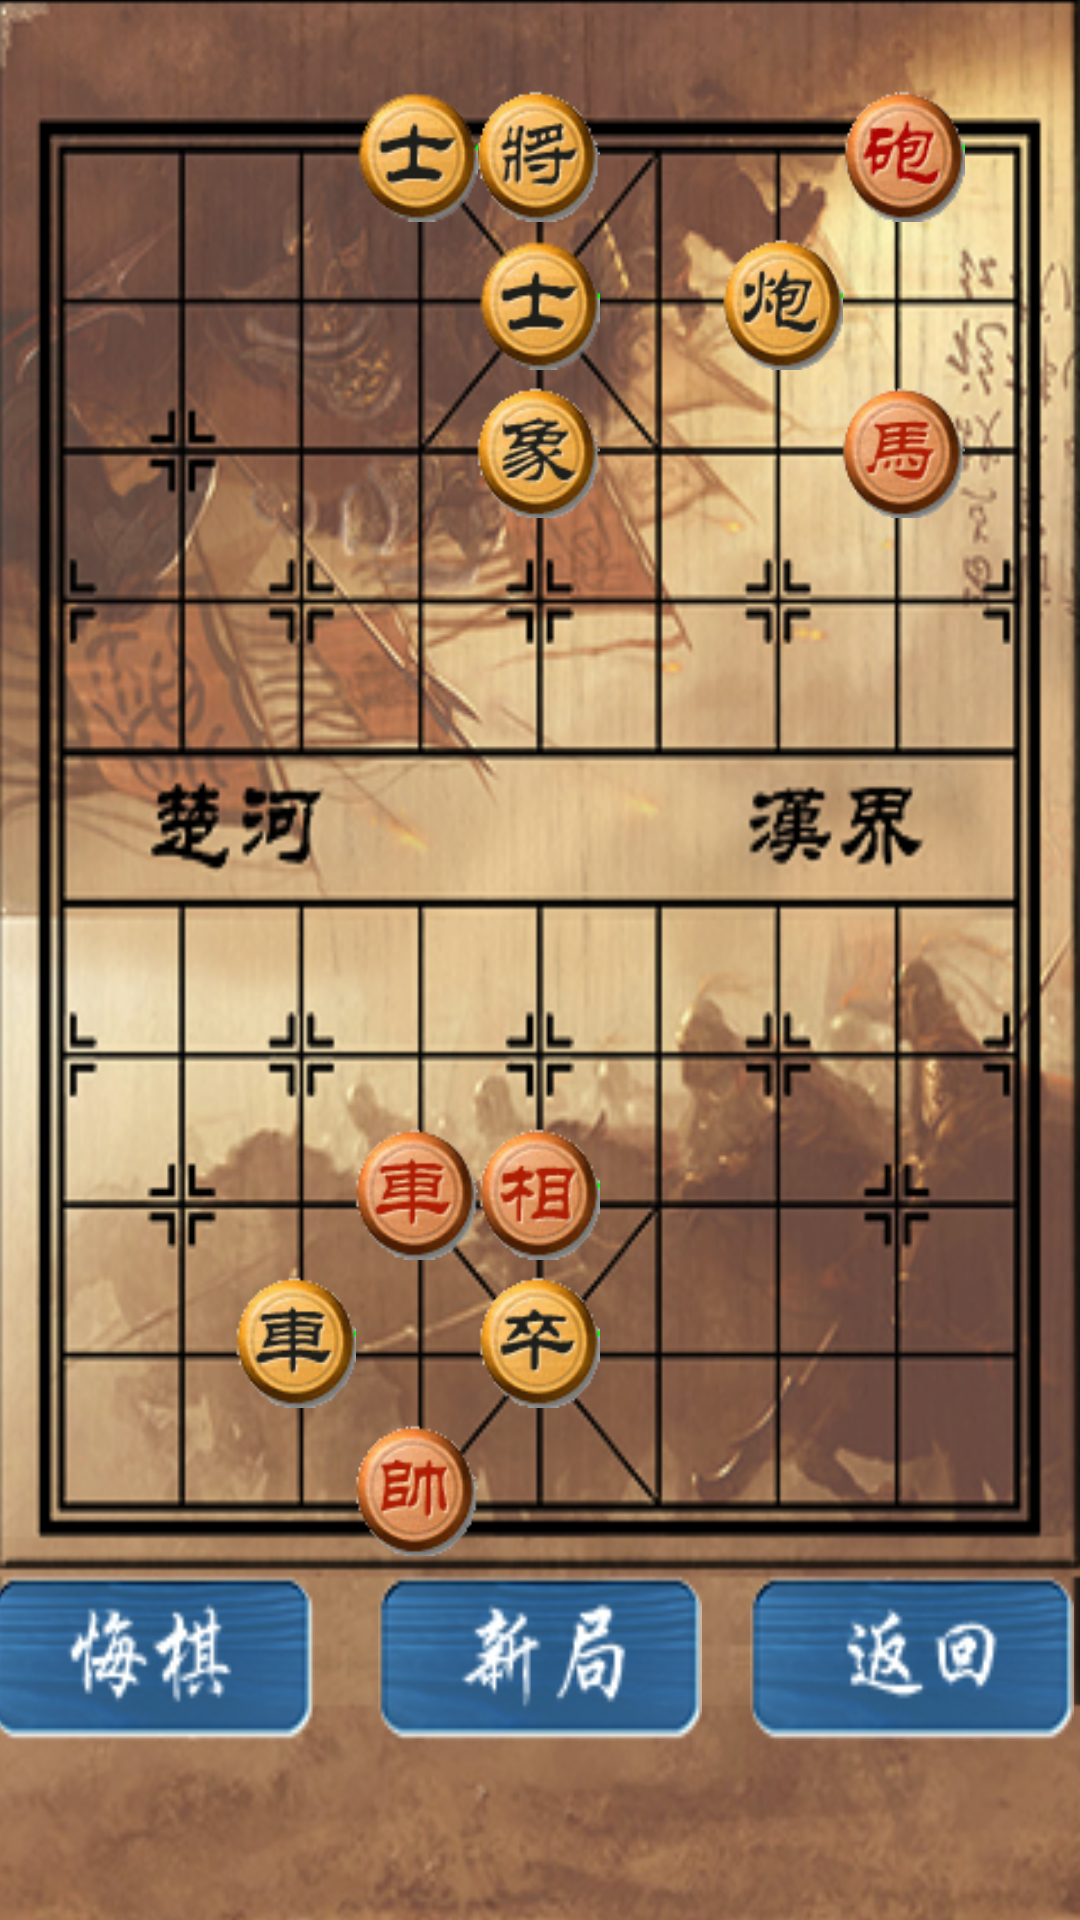 中国象棋修改版截图(4)